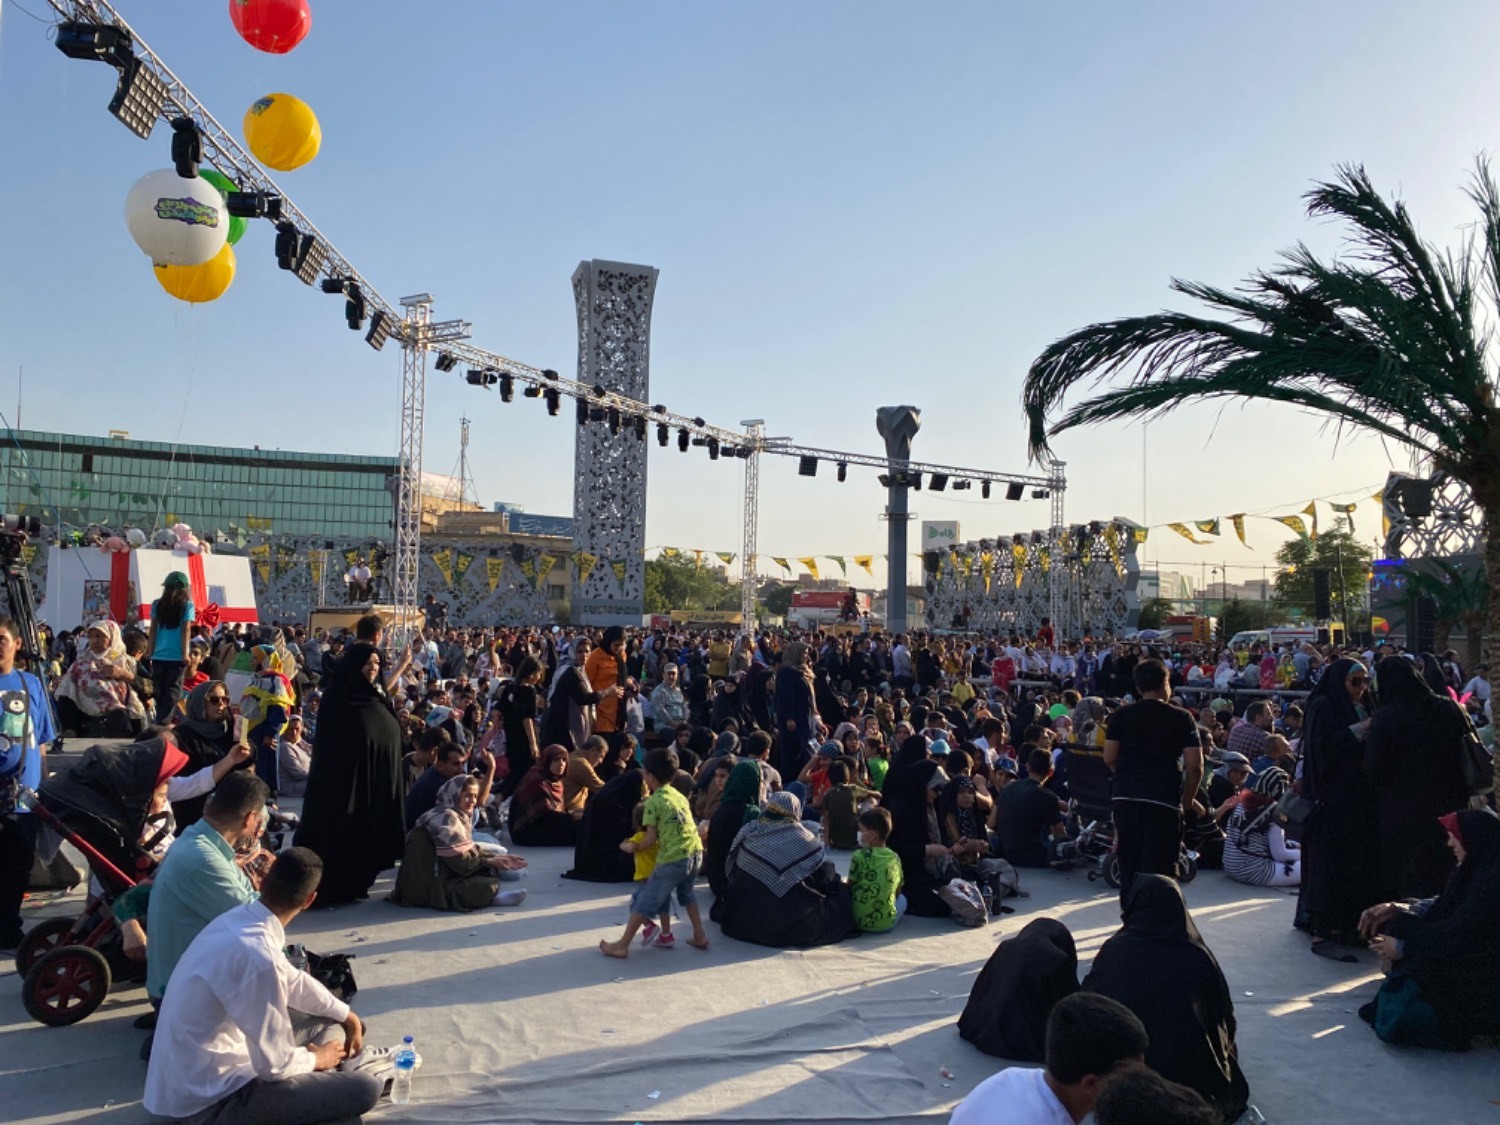 مهمونی ۱۰ کیلومتری غدیر؛ جشنی به وسعت ایران + عکس و فیلم